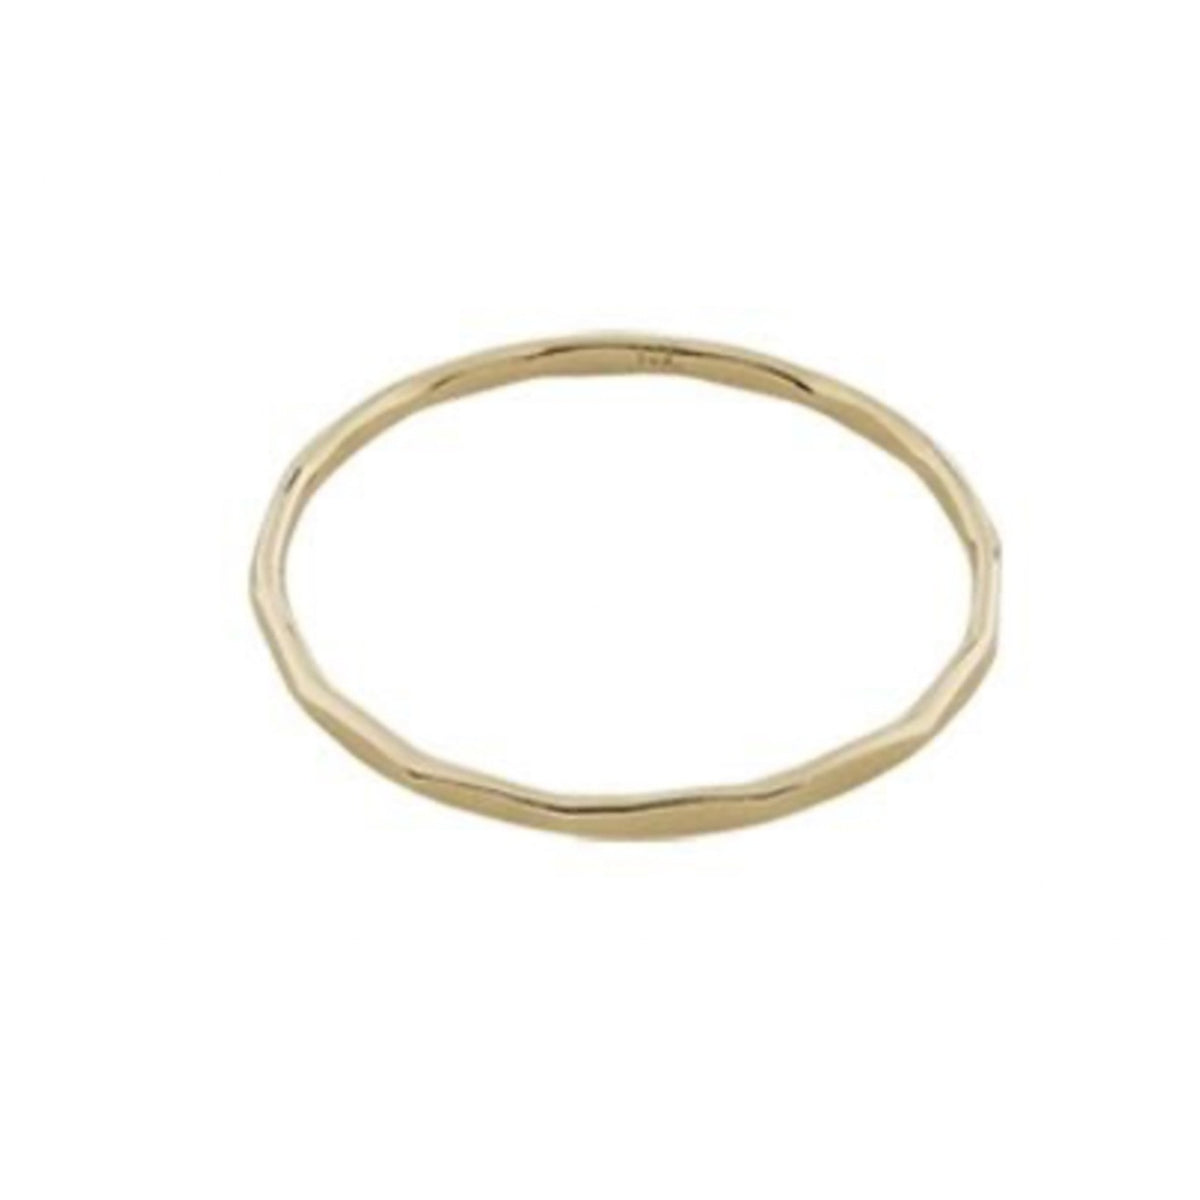 Hammered ring - 14k Gold Filled